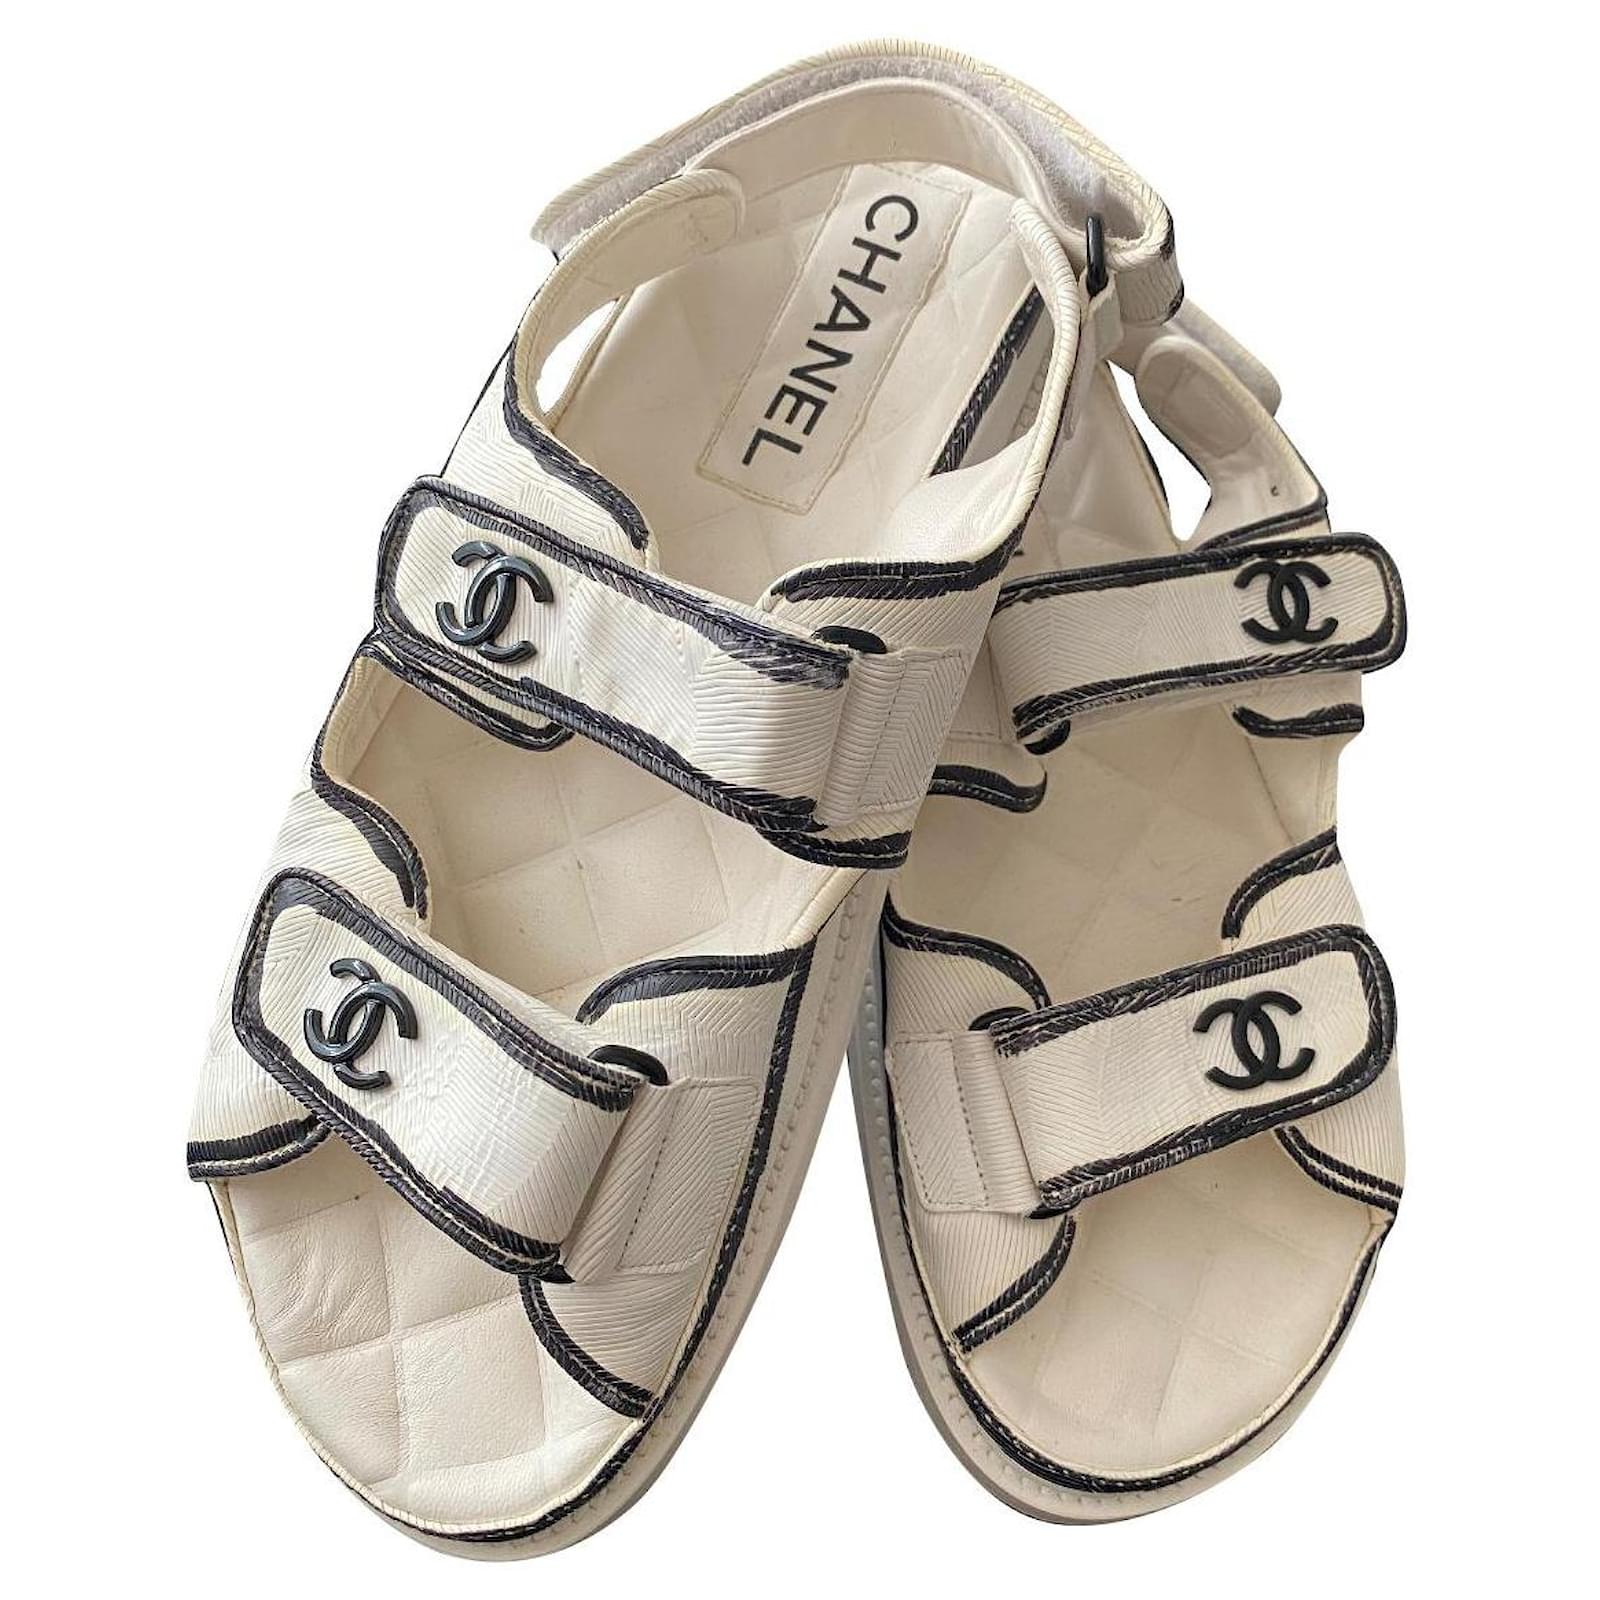 Sandals Chanel Size 39 EU